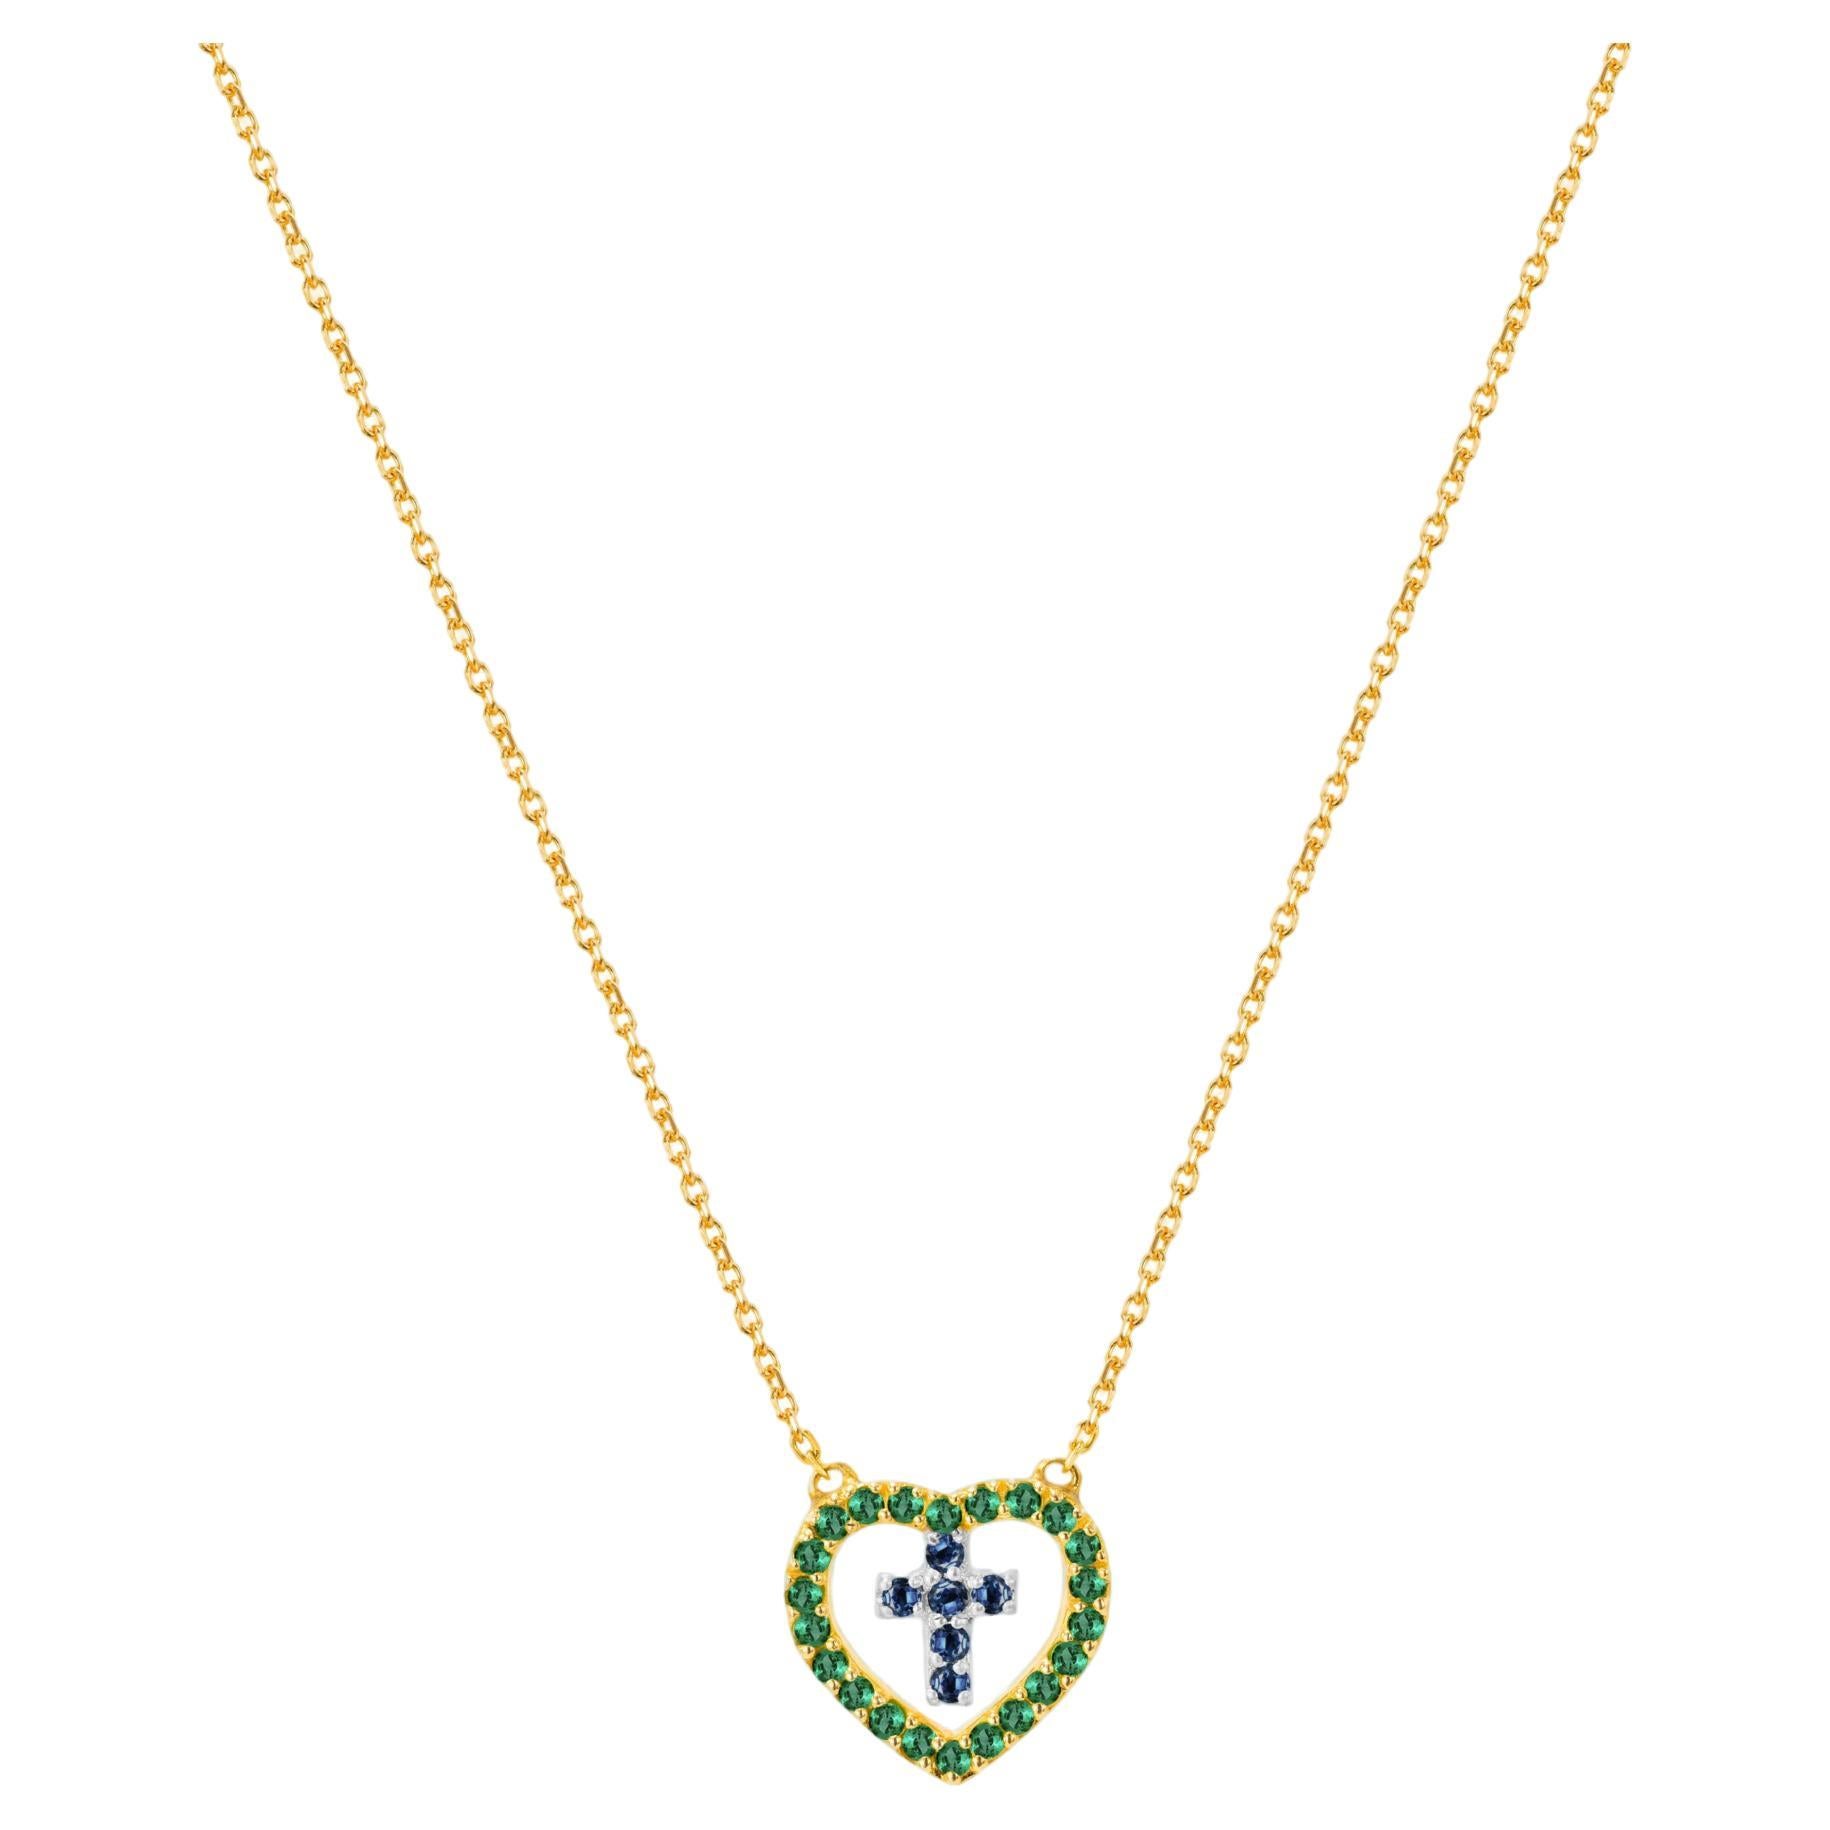 Halskette aus 18 Karat Gold mit echtem Smaragd und blauem Saphir Kreuz in Herz